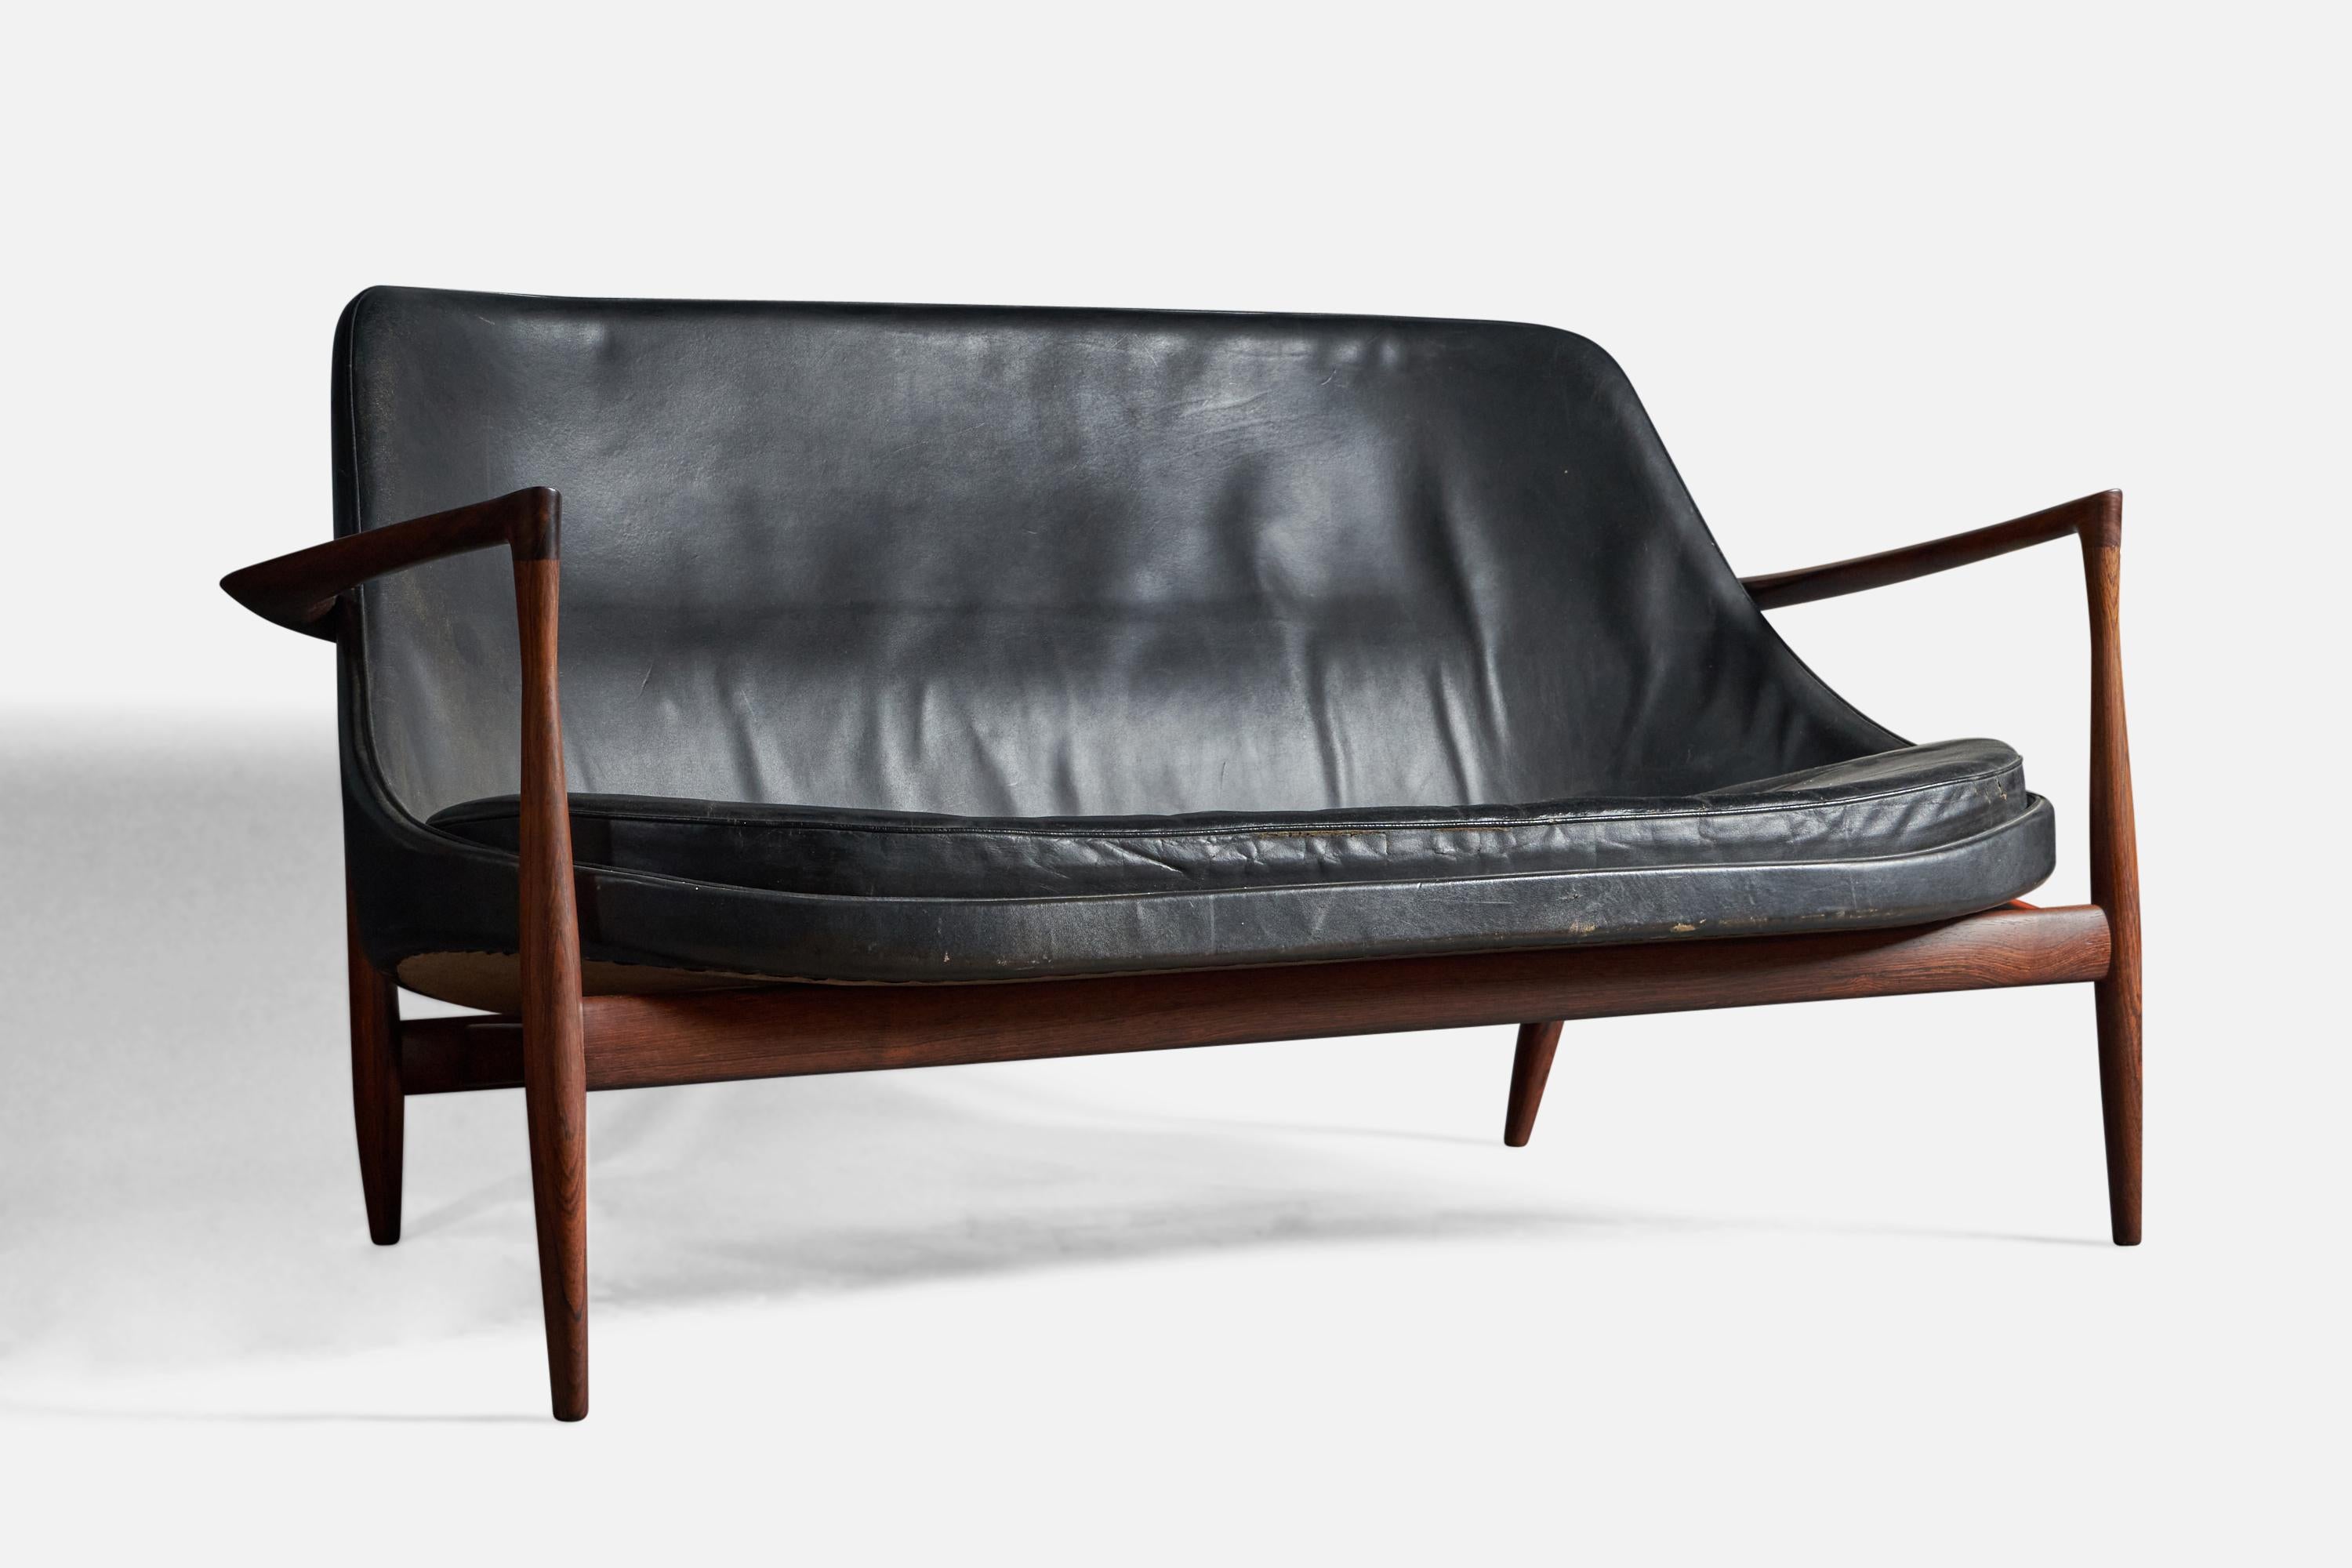 Canapé en cuir noir et bois de rose, conçu par Ib Kofod-Larsen et produit par Christensen & Larsen, Danemark, années 1950.
